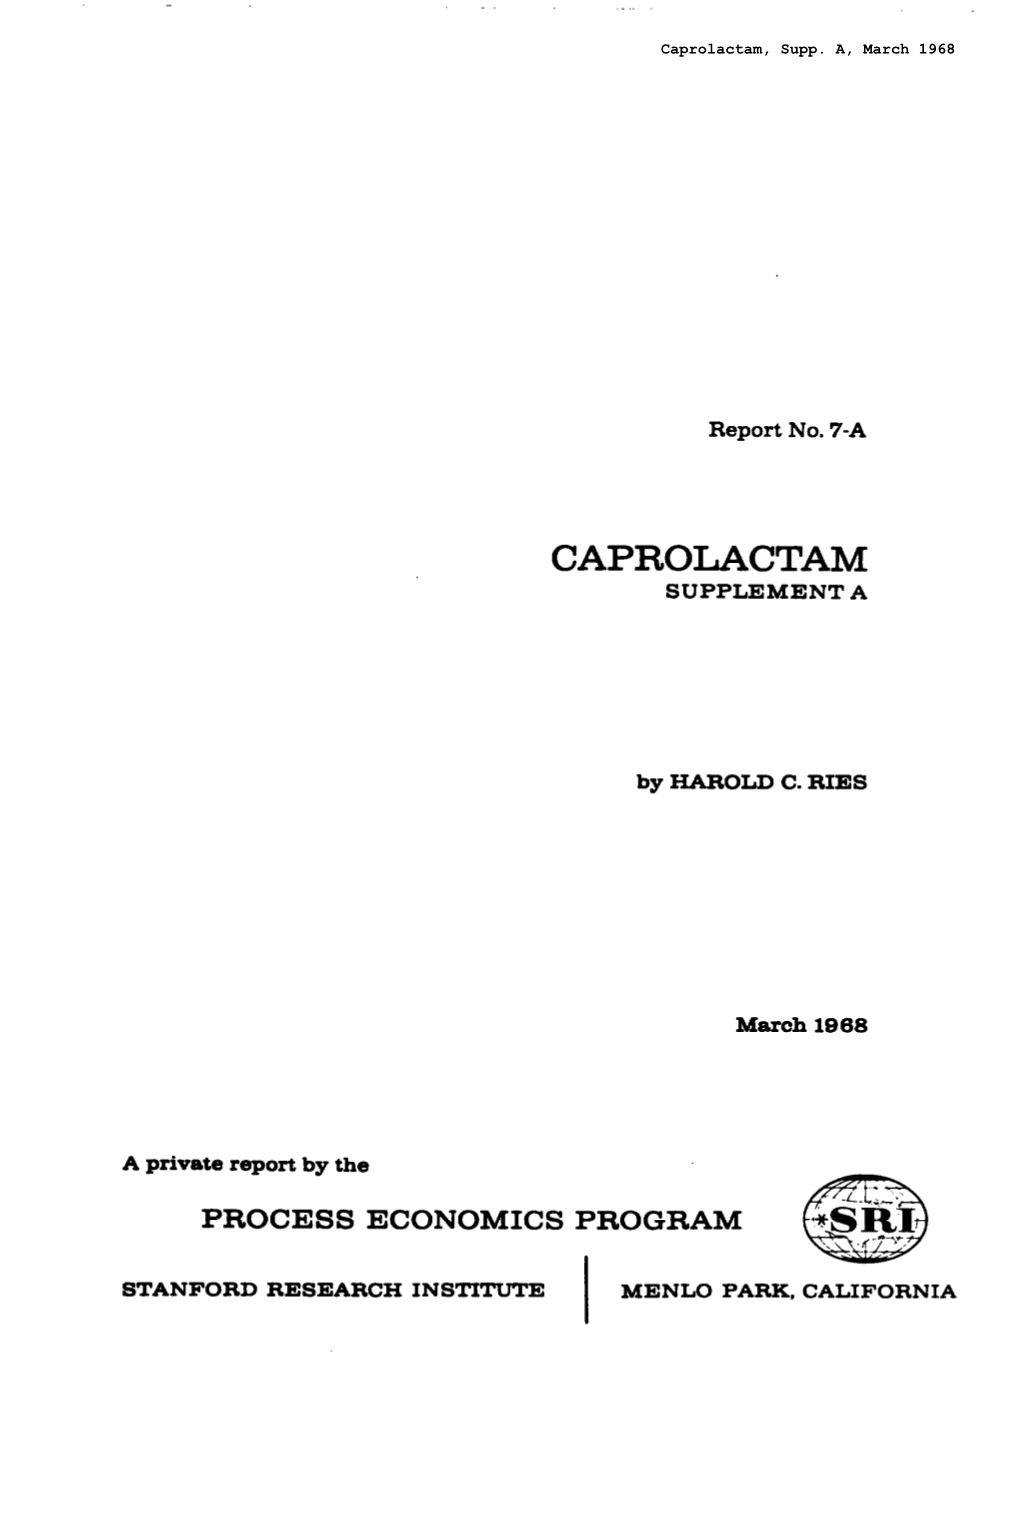 Caprolactam, Supplement A